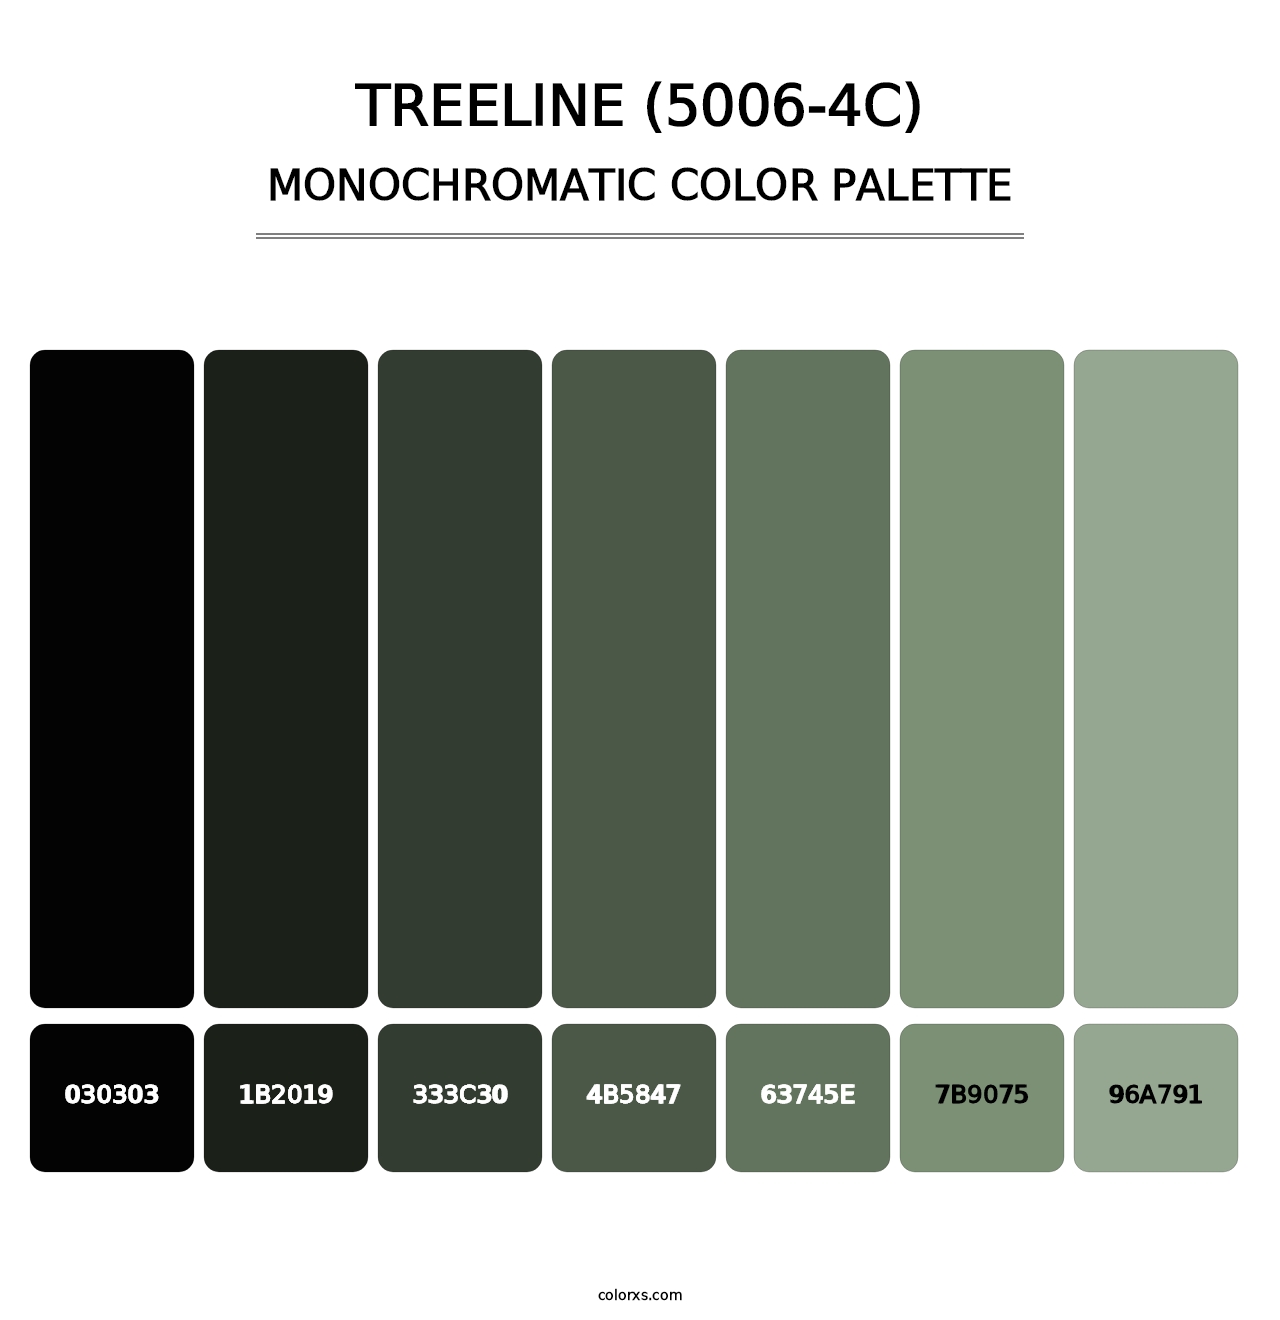 Treeline (5006-4C) - Monochromatic Color Palette